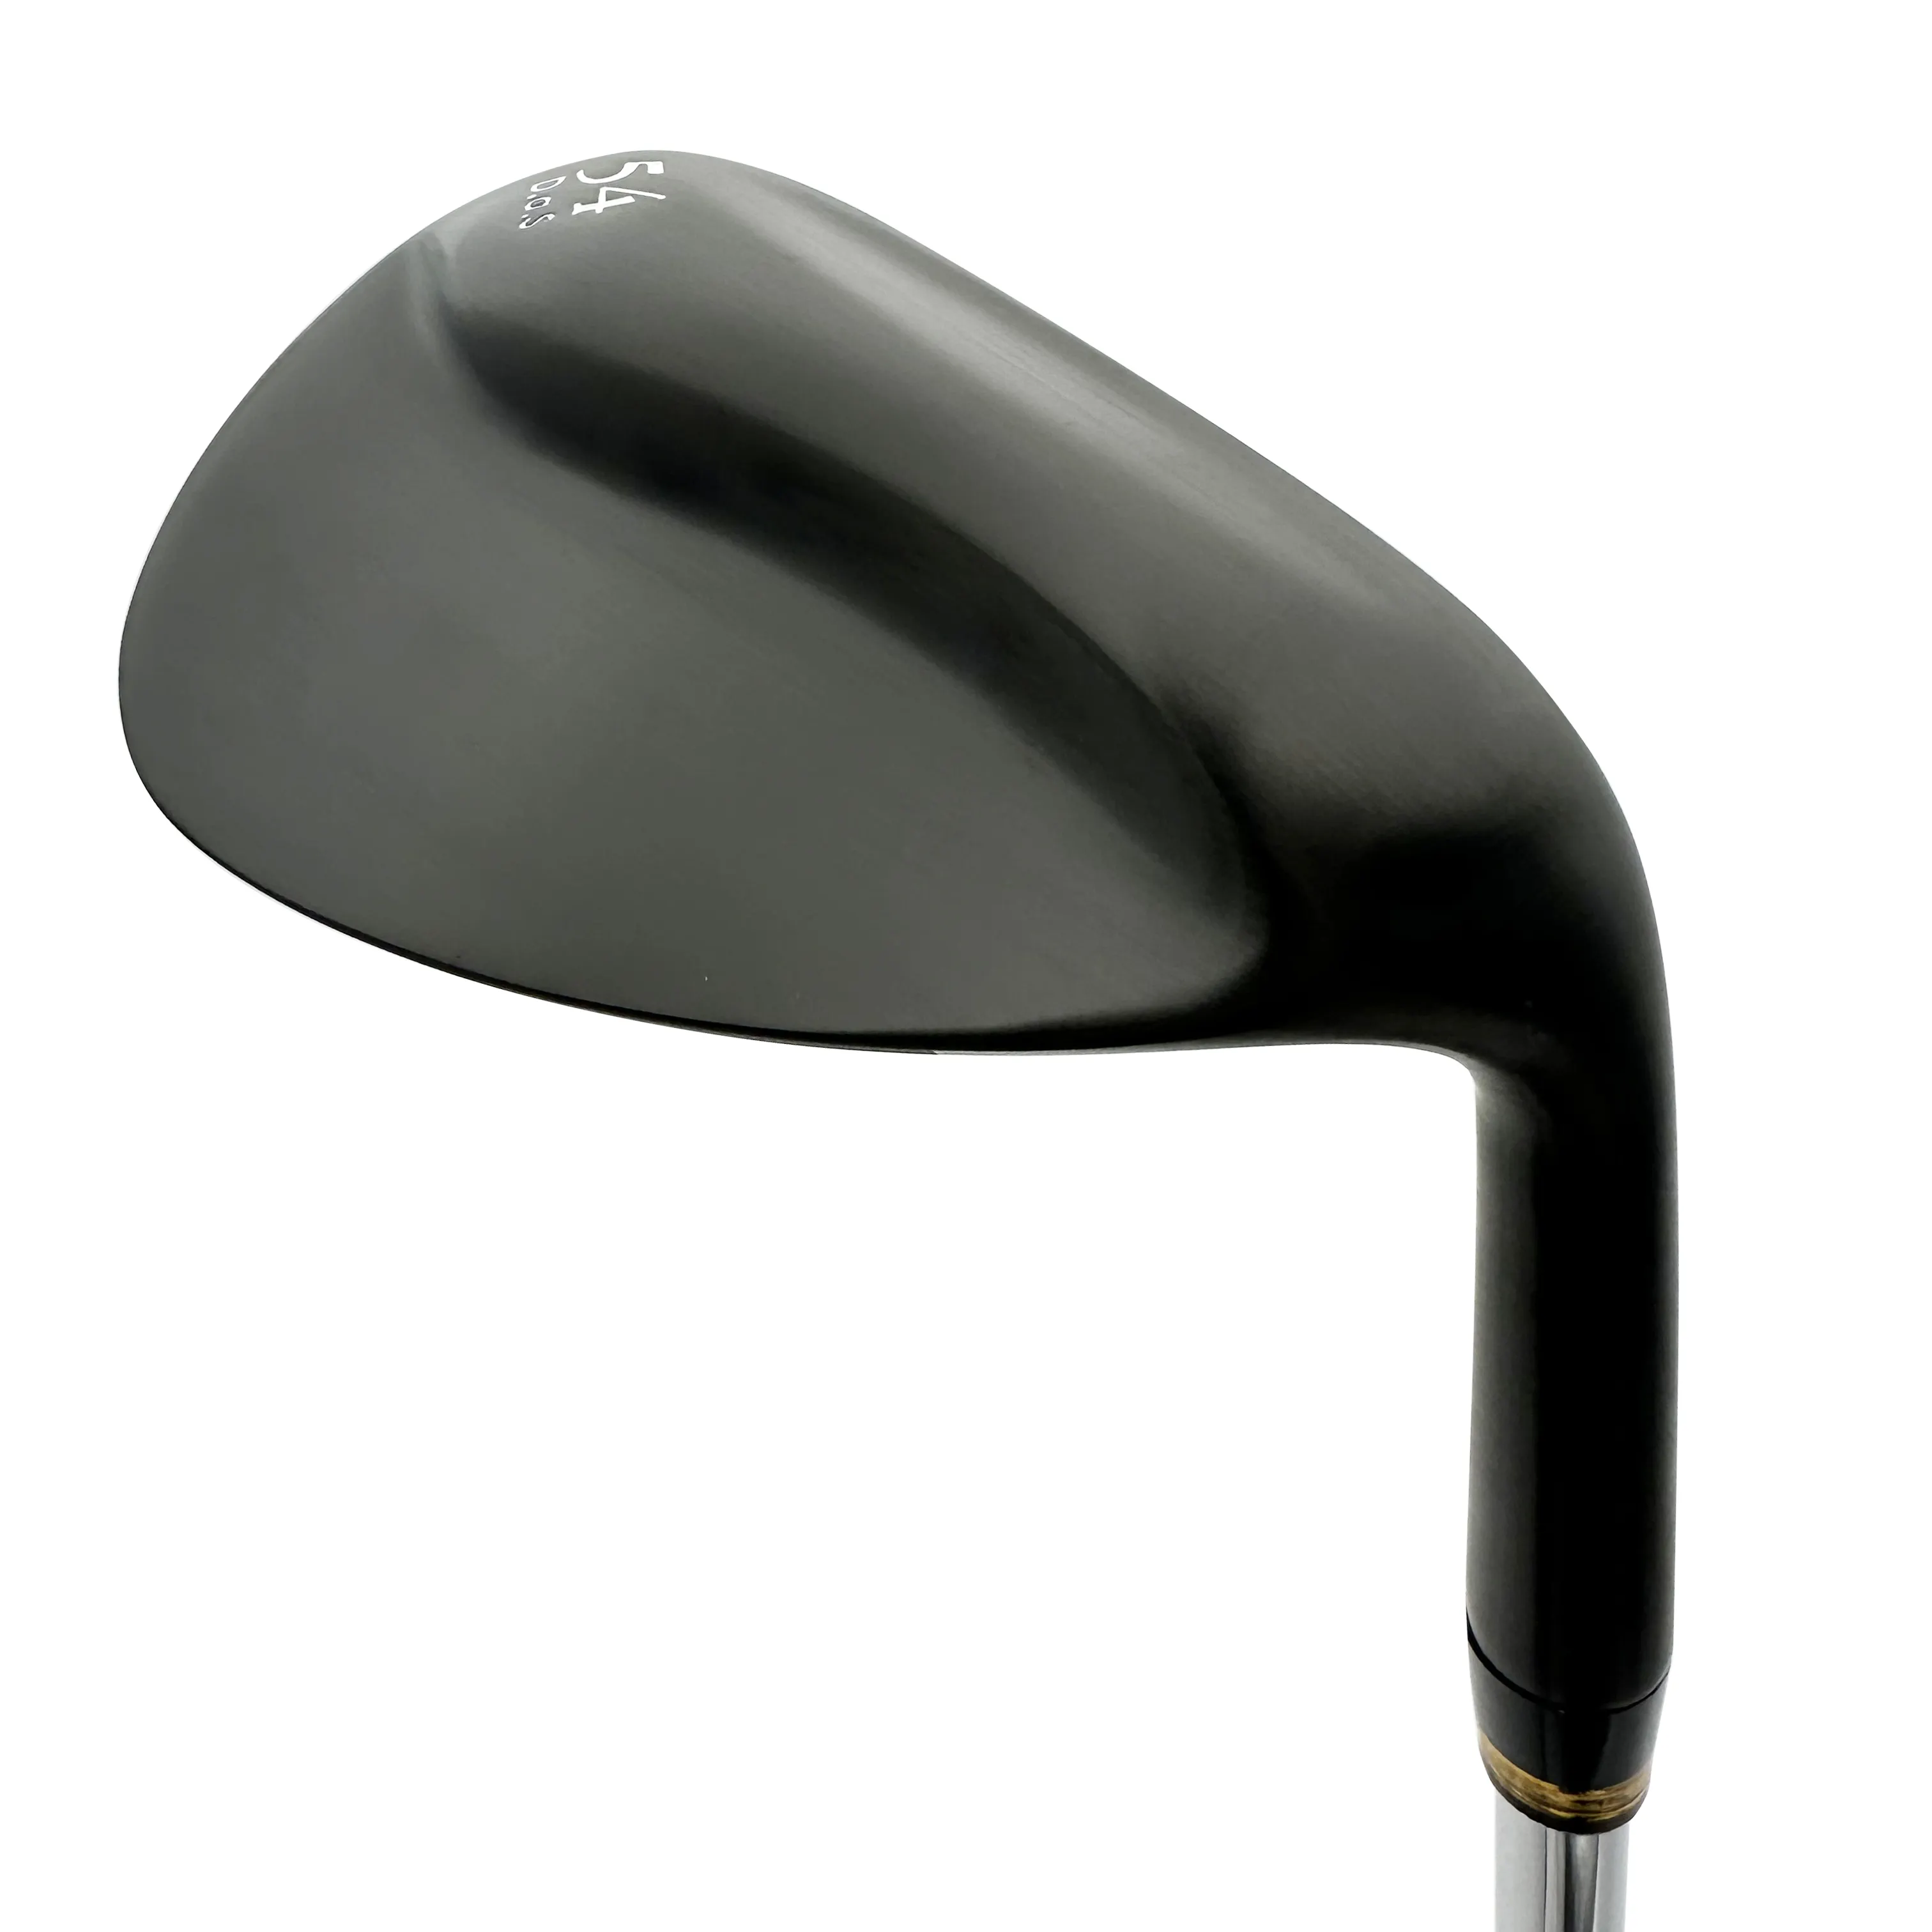 Verkaufen Sie hochwertige schwarz geschmiedete Keil Golf Club CNC OEM Golfschläger Keilkopf Unisex Golf Wedges